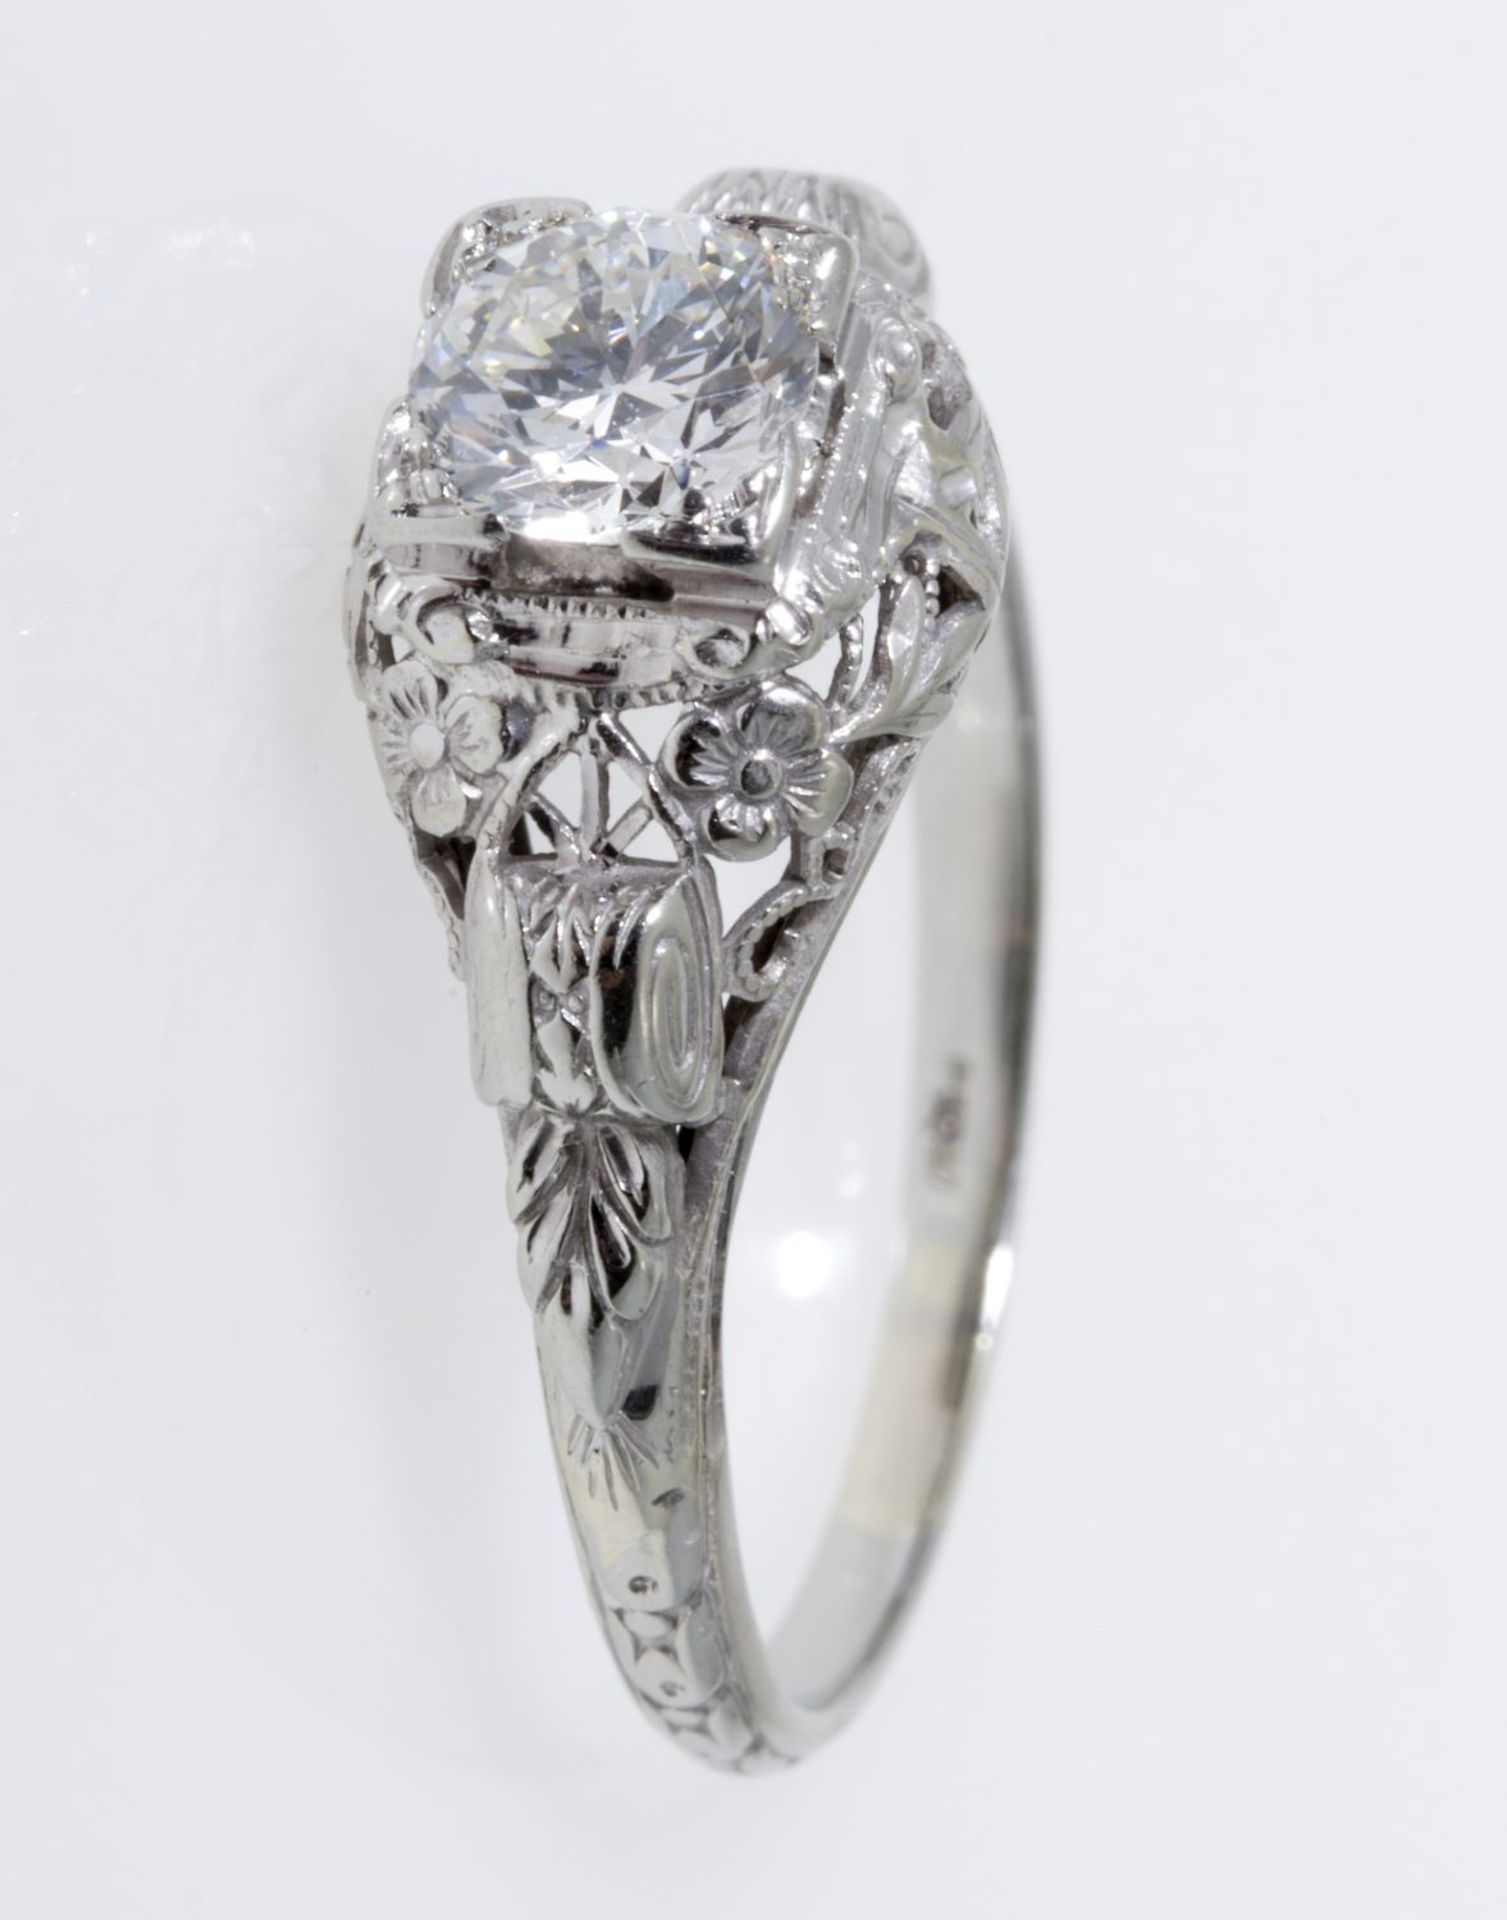 Solitär-Diamant-Ring Weißgold 585 (geprüft). Floral durchbrochener Ringkopf ausgefasst mit Altschlif - Image 3 of 3